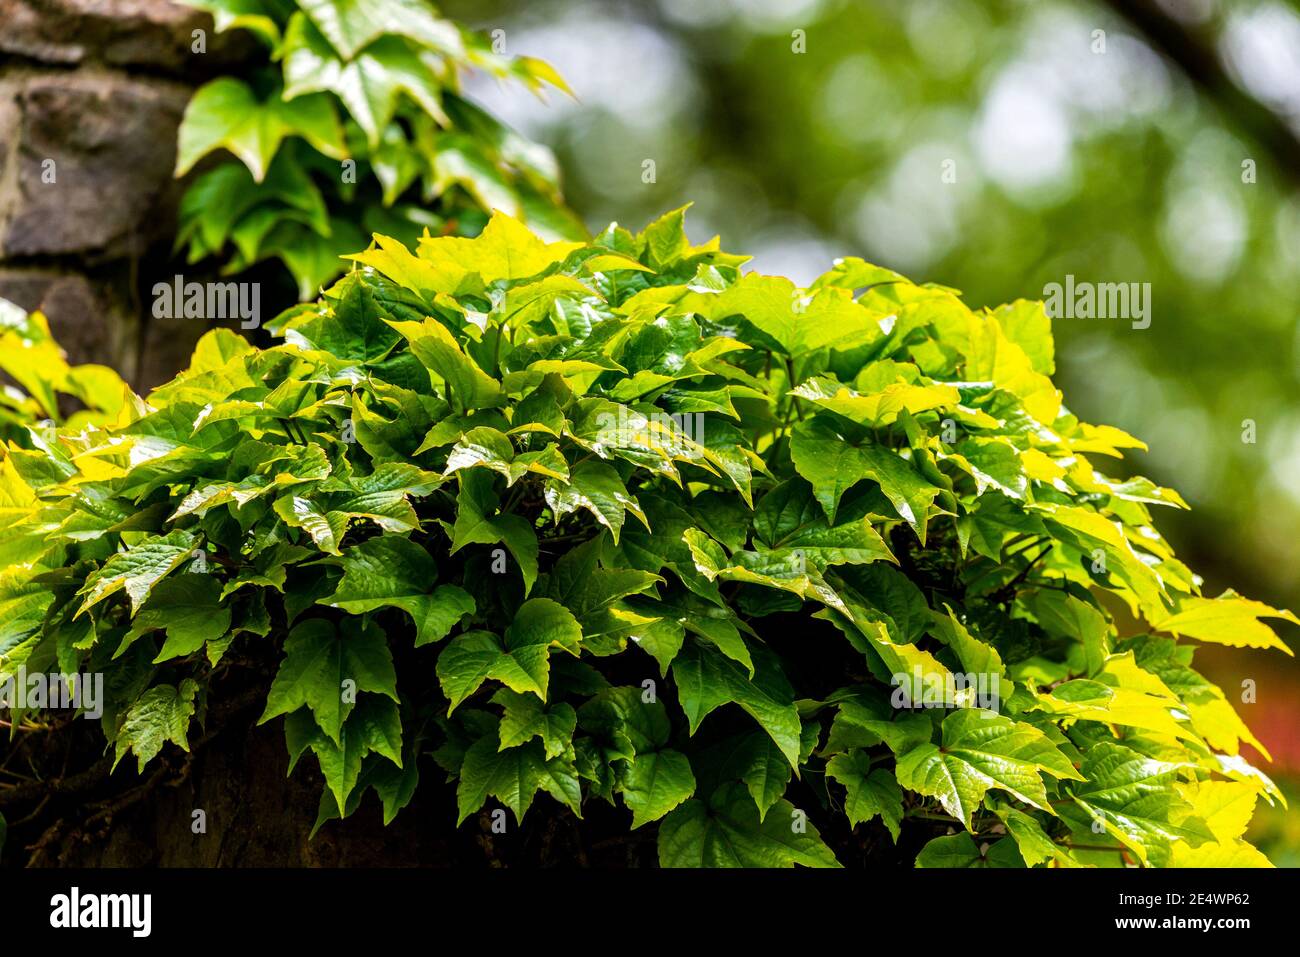 Englisch Ivy oder Hedera Helix ist eine anhaftende immergrüne Weinpflanze. Stockfoto